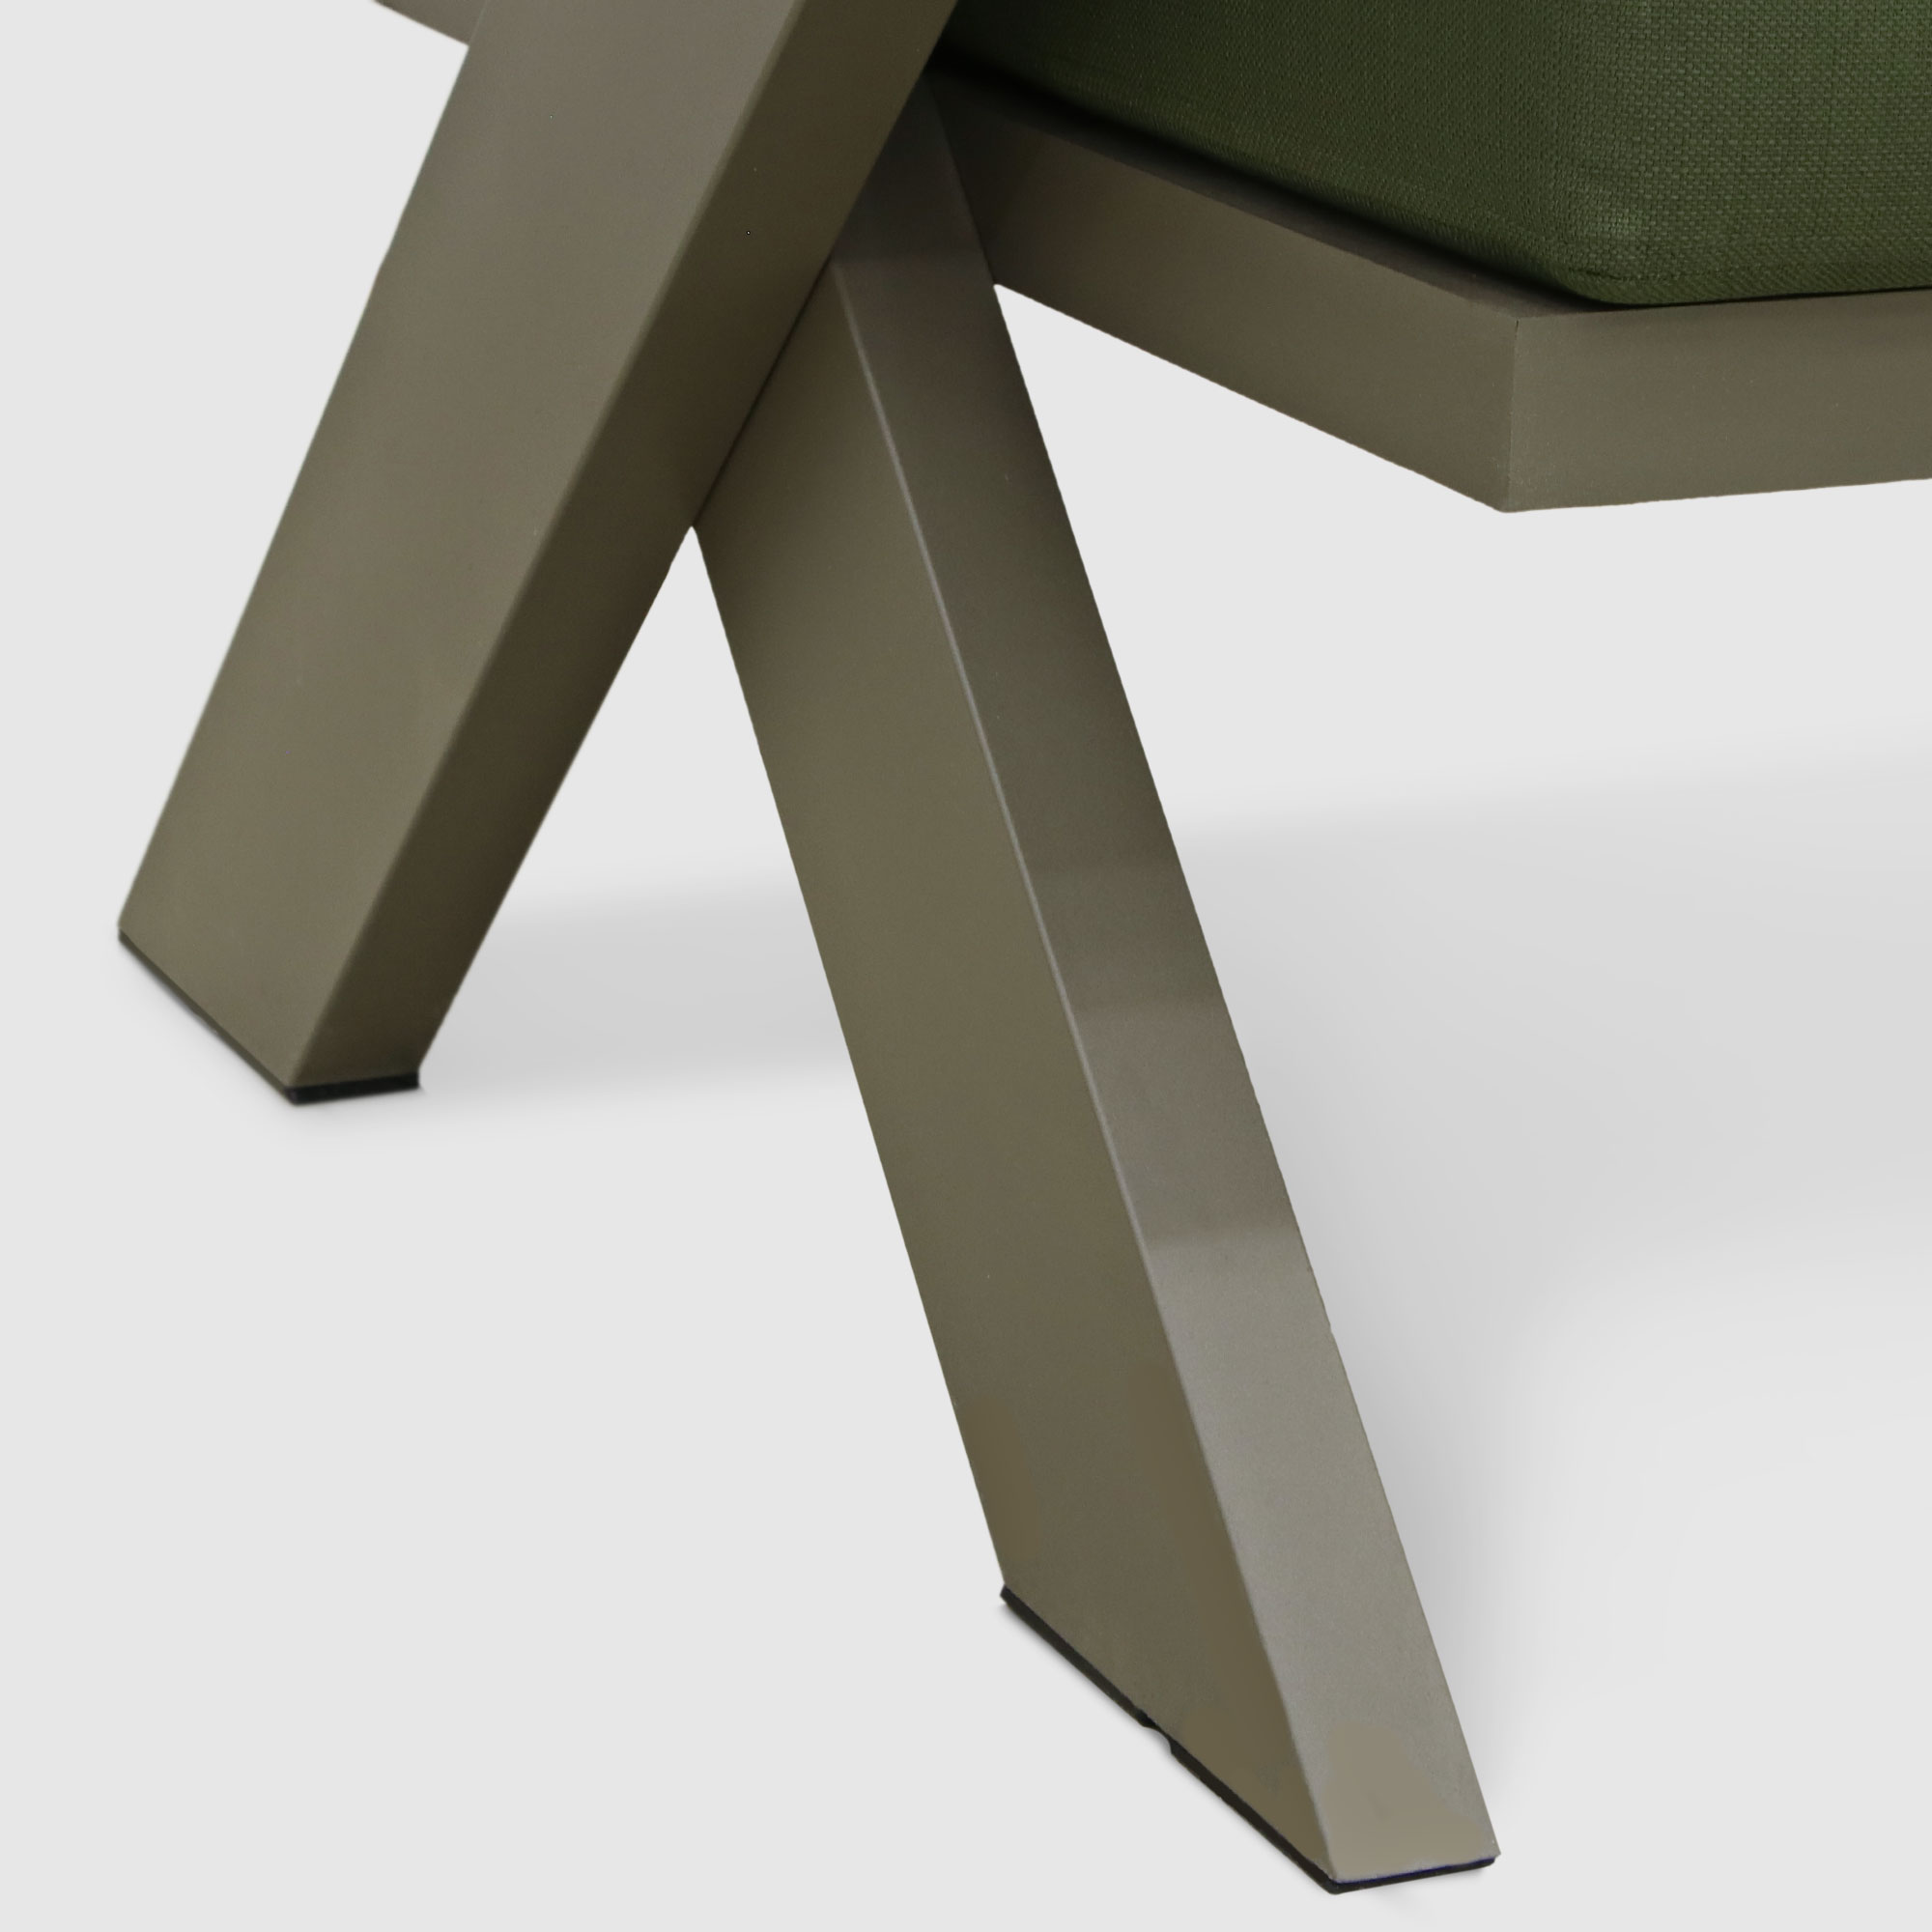 Комплект мебели Emek garden Toledo зеленый 4 предмета, цвет оливковый, размер 170х80х90 - фото 15